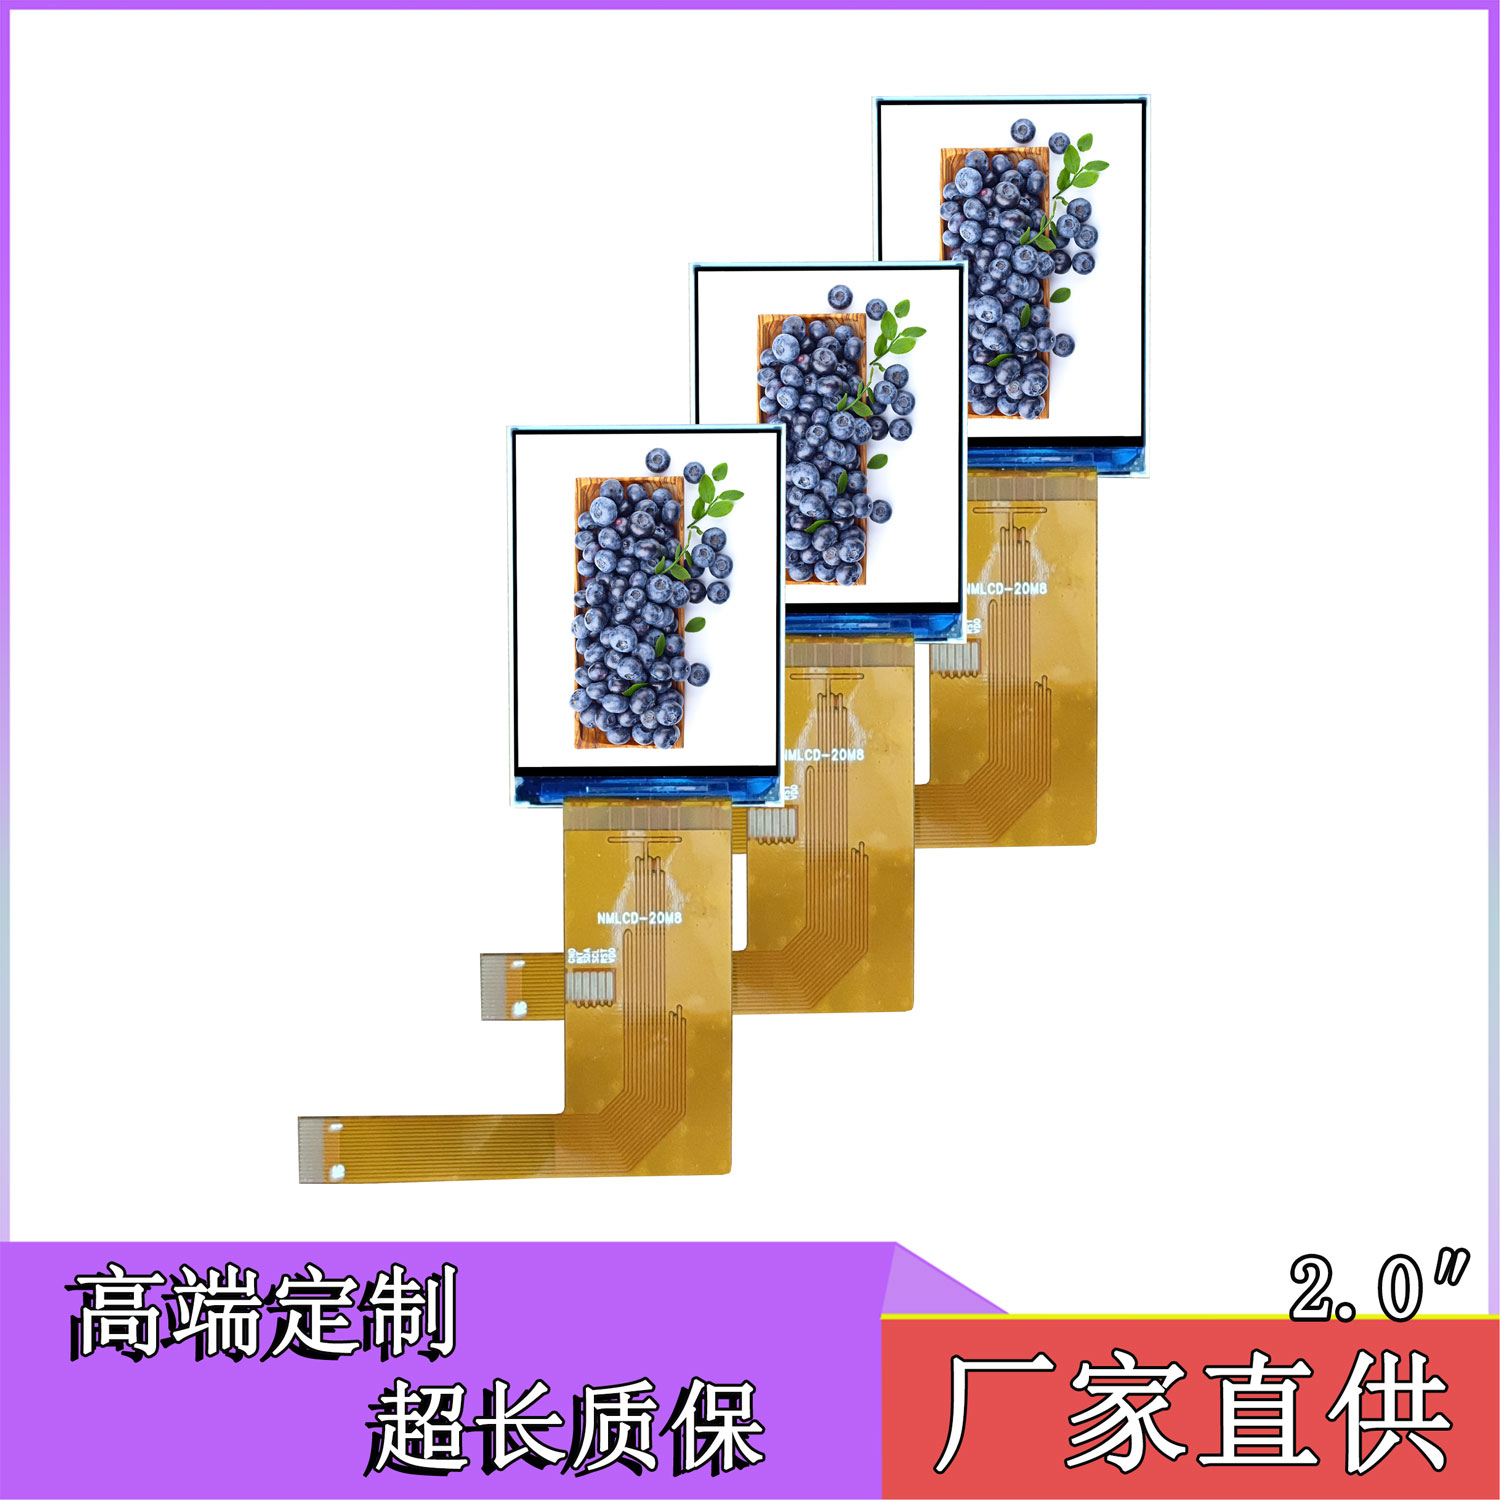 广东珠海广州2寸IPS240*320智能模块编程器仪器仪表串口屏液晶显示屏